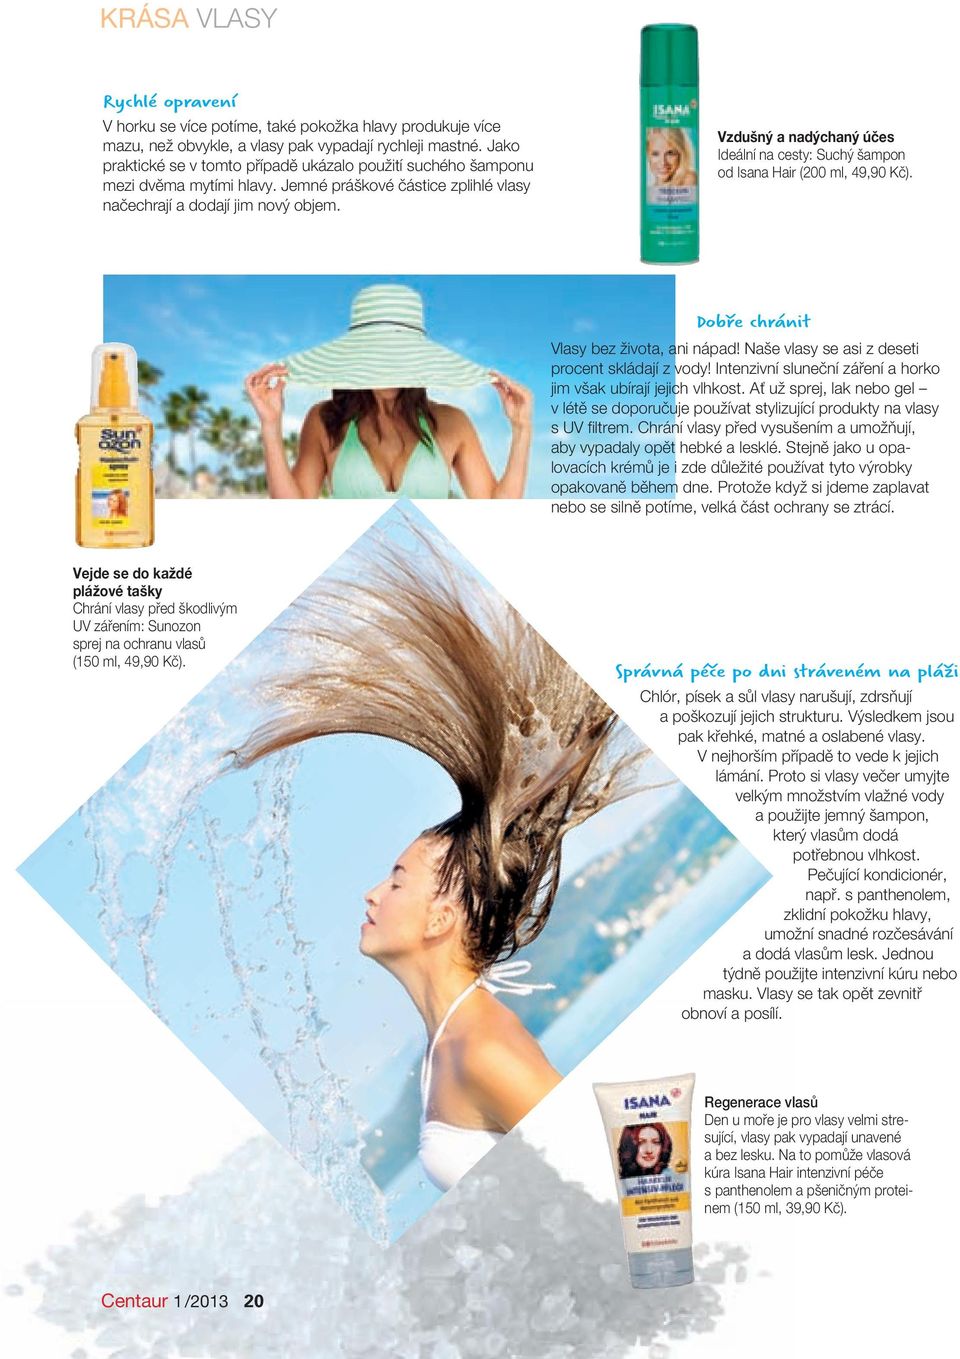 Vzdušný a nadýchaný účes Ideální na cesty: Suchý šampon od Isana Hair (200 ml, 49,90 Kč). Dobře chránit Vlasy bez života, ani nápad! Naše vlasy se asi z deseti procent skládají z vody!